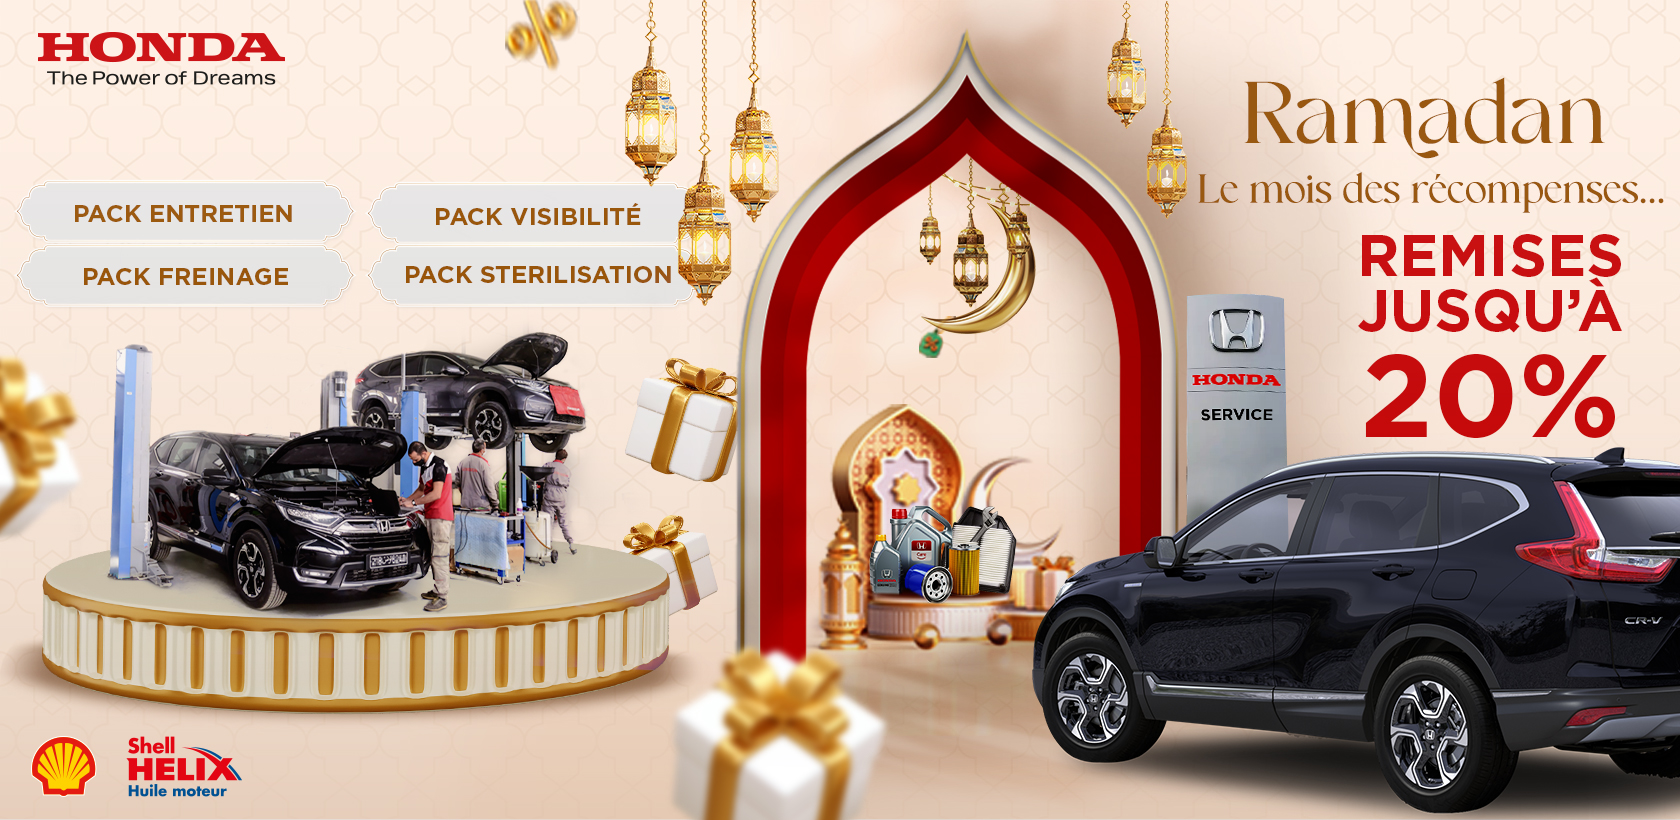 Promotions chez Honda Tunisie pendant tout le mois de Ramadan